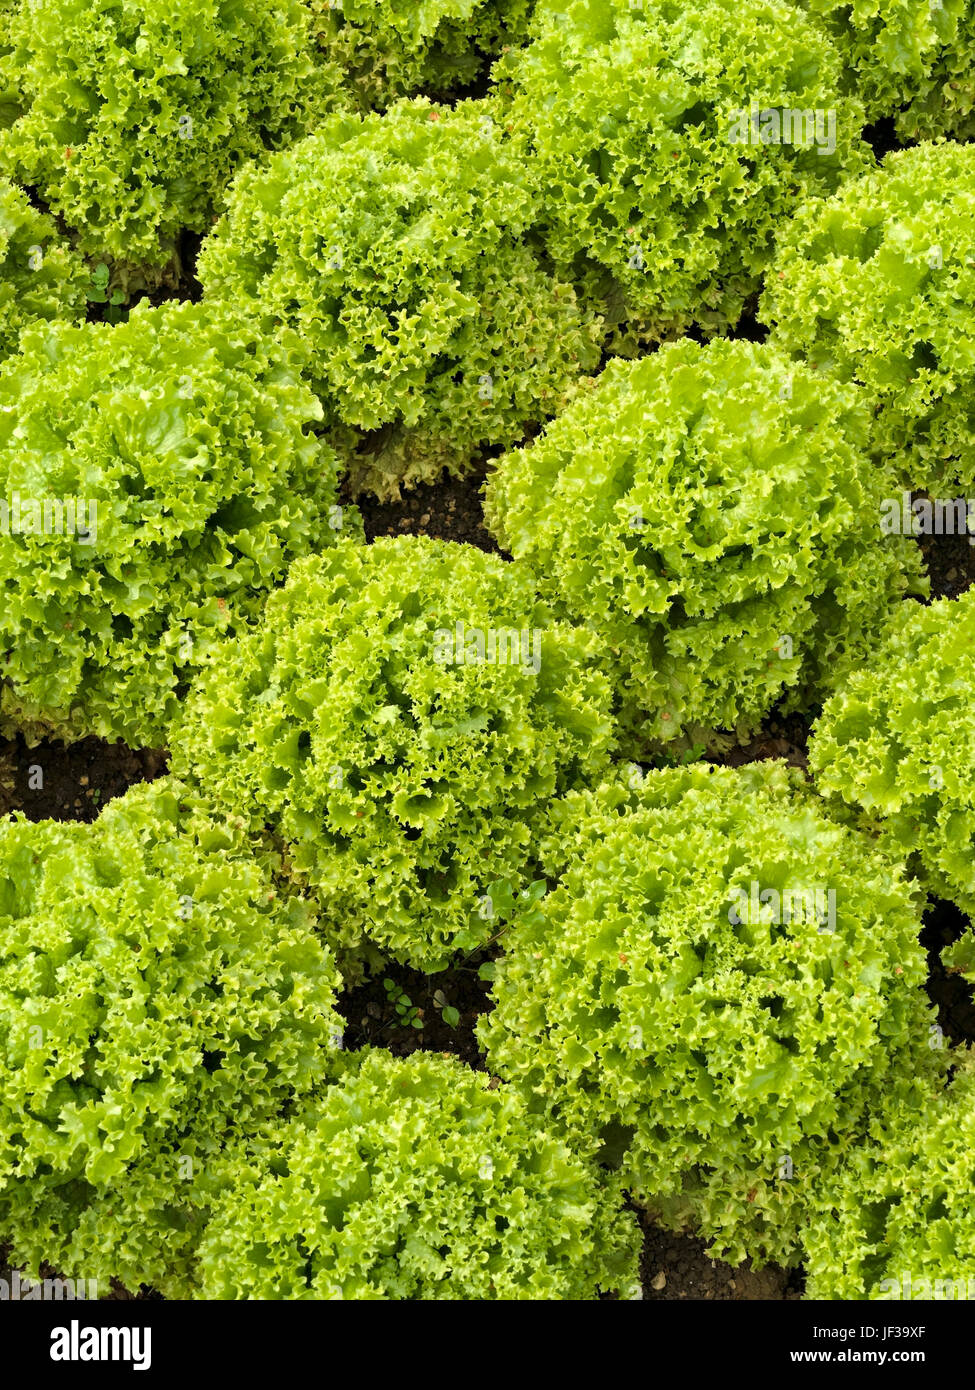 Lollo bionda corail vert feuilles de laitues frisées croissant dans les lignes denses en UK une salade de légumes jardin. Banque D'Images